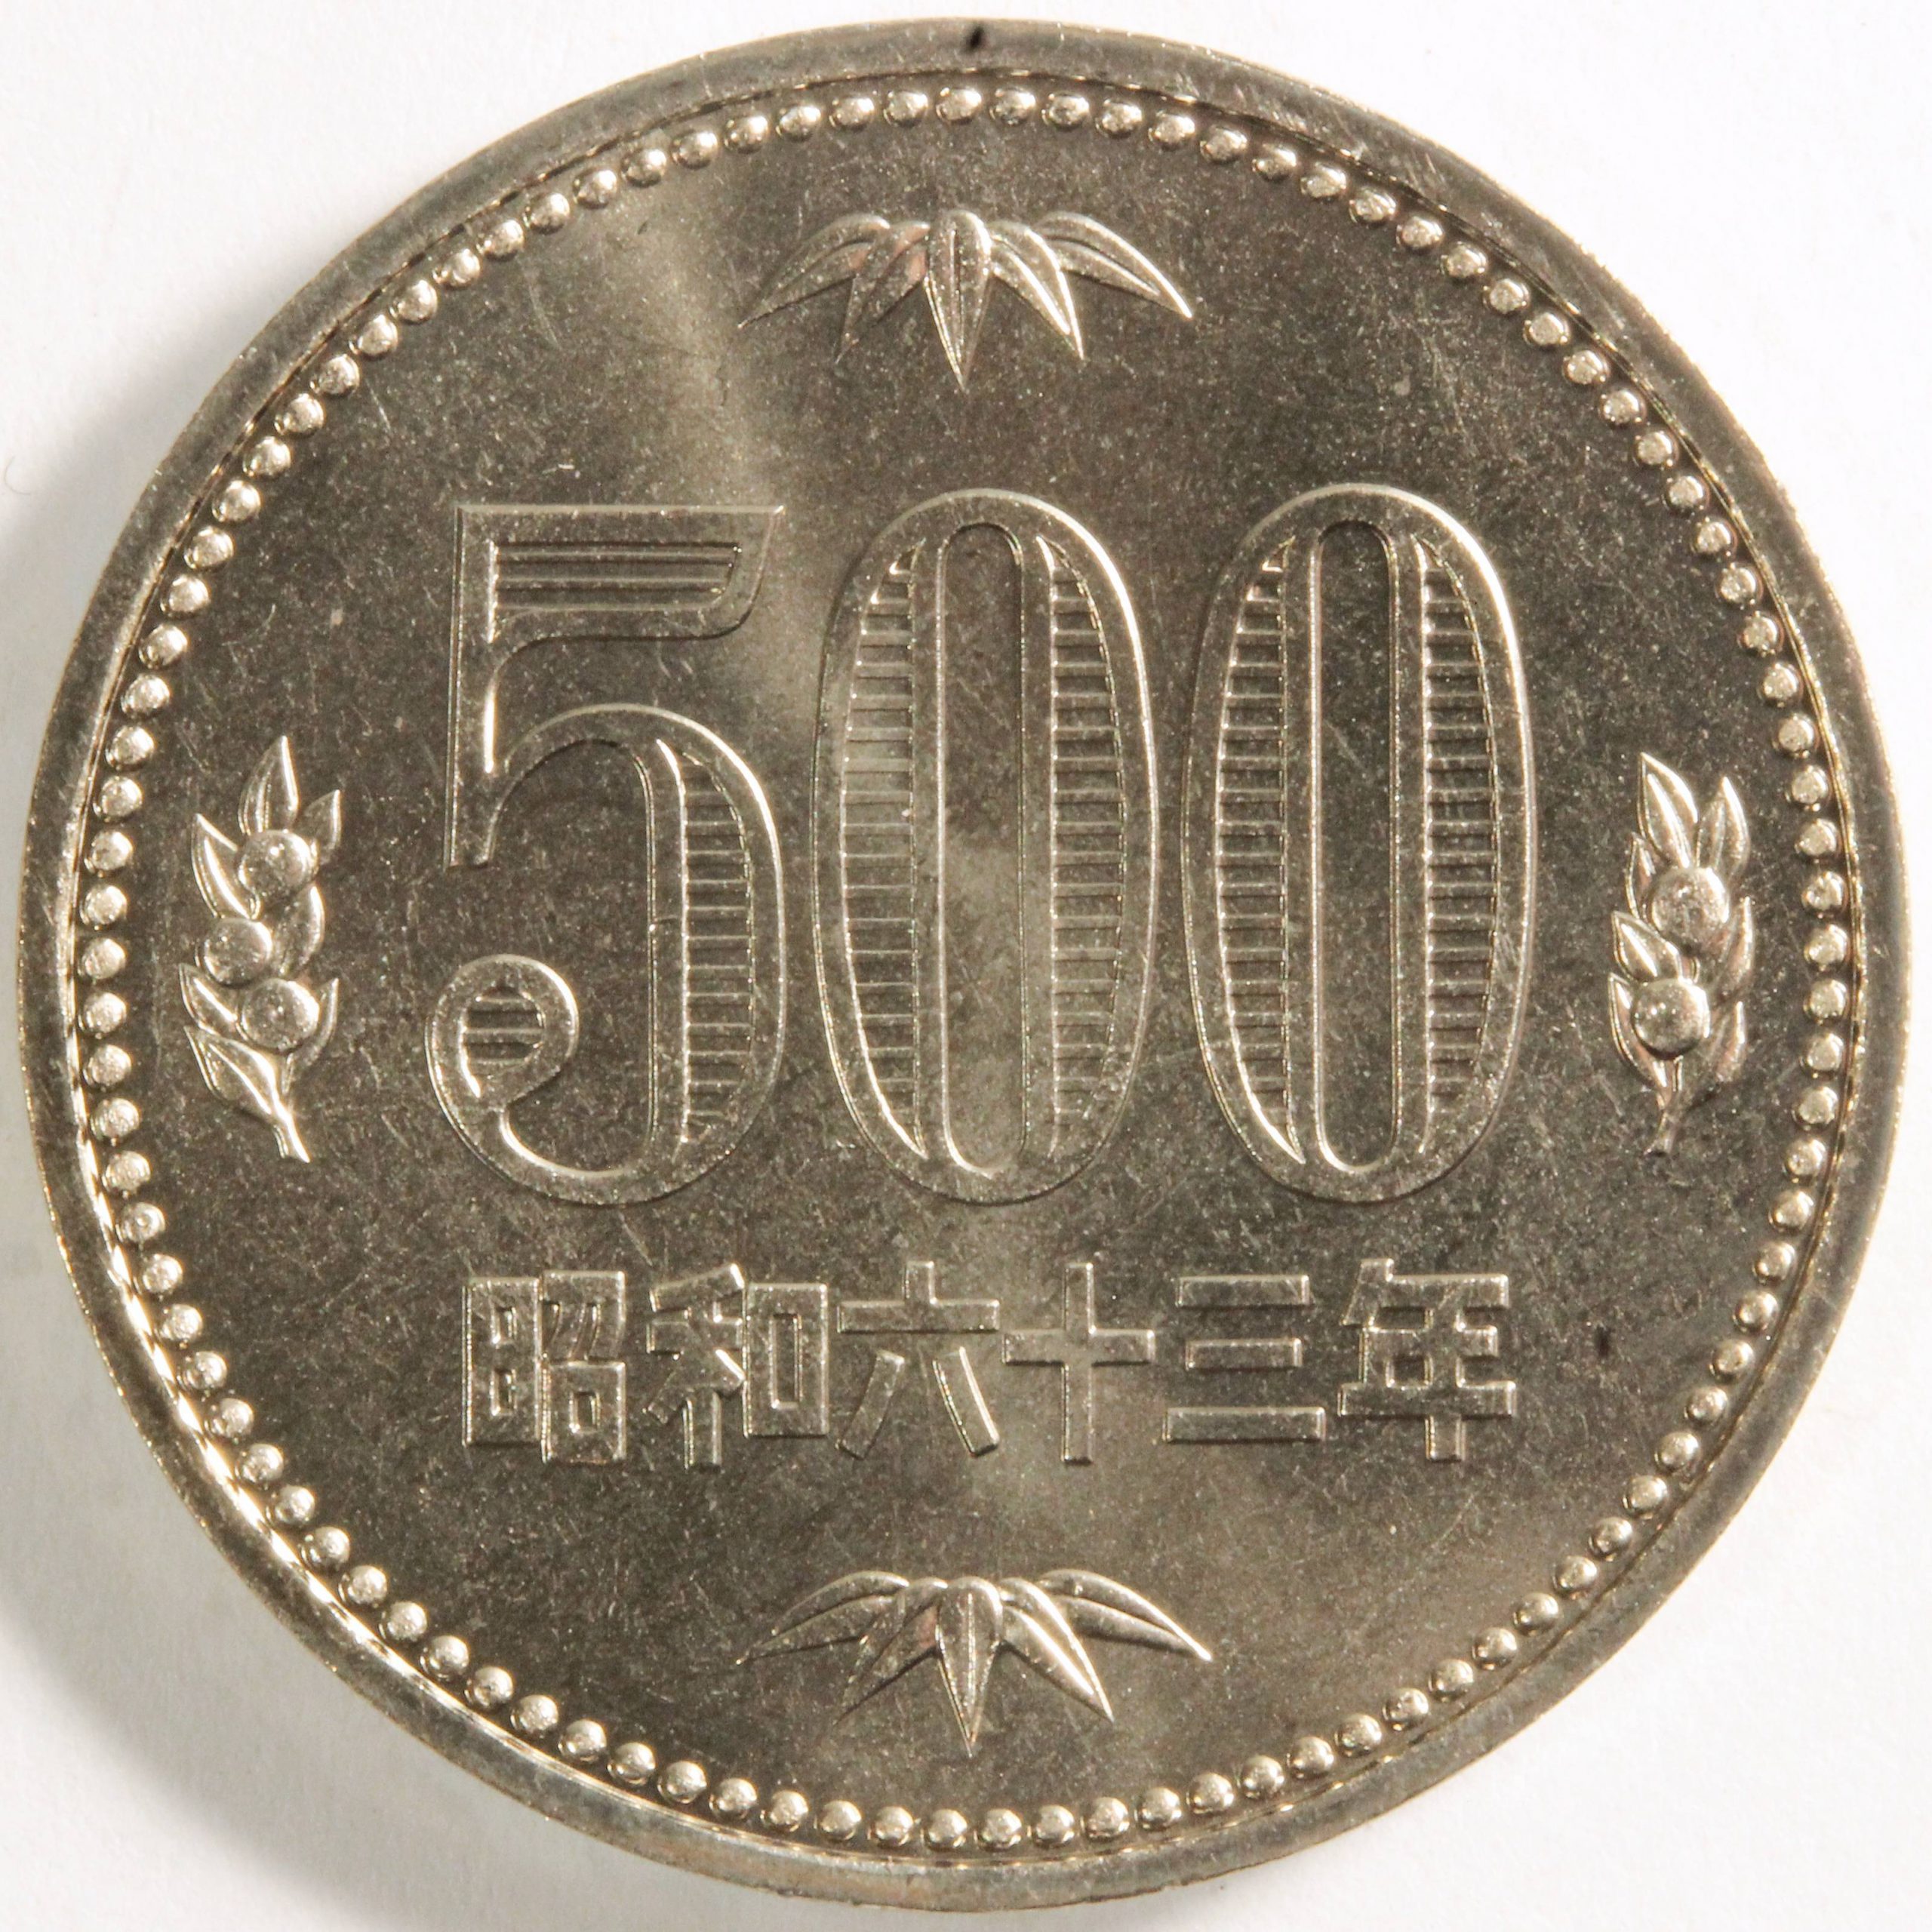 500円白銅貨 昭和63年 未使用品 コイン 古銭 | ミスターコインズ